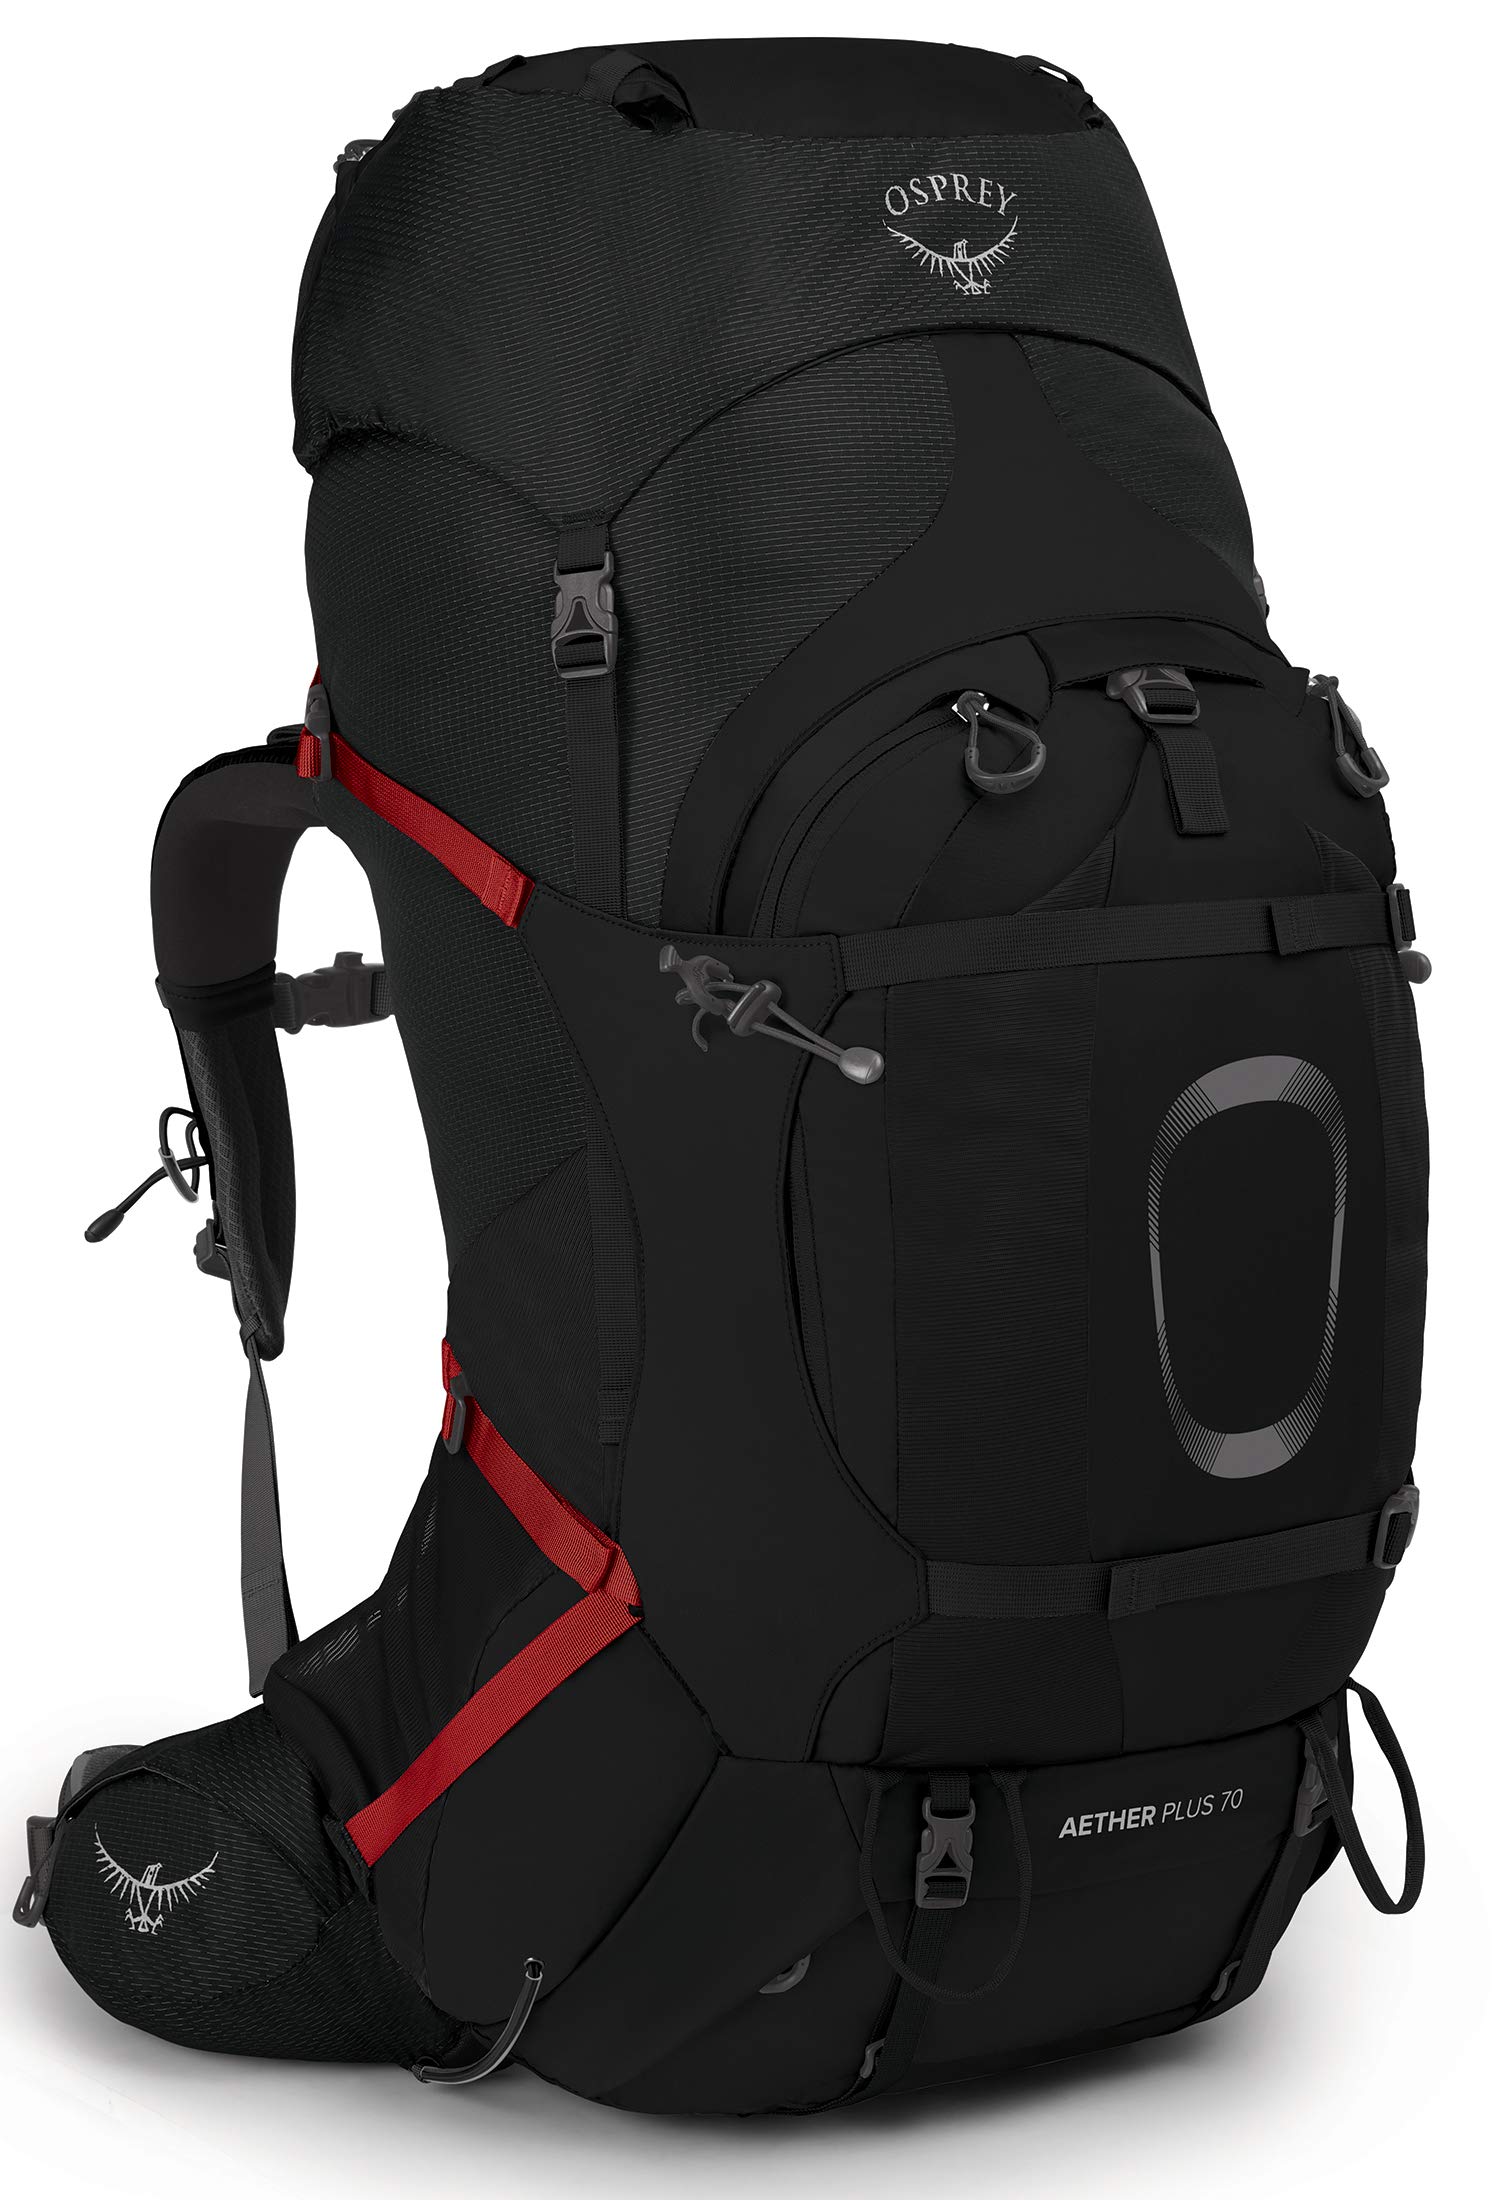 Osprey Aether Plus 70L Backpack - Men's